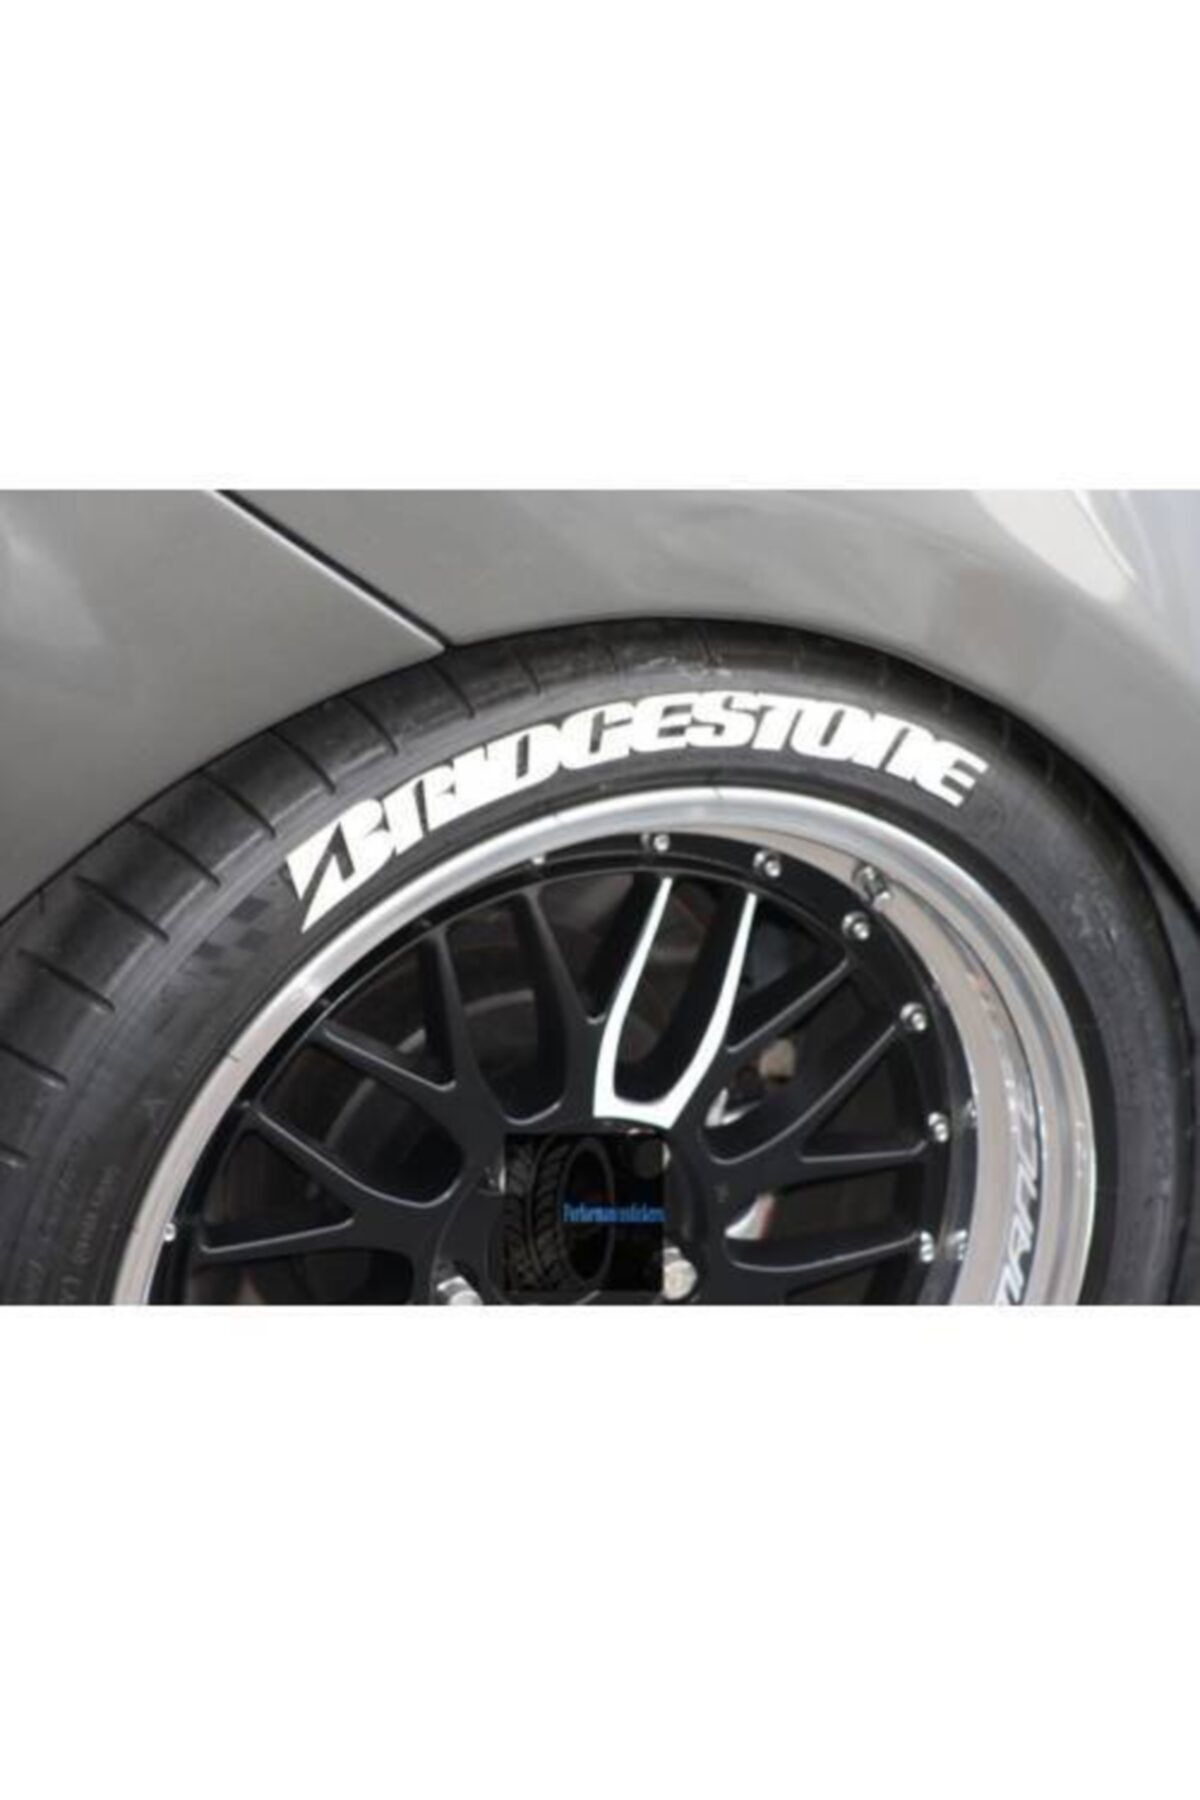 Bridgestone Lastik Yazısı Brıdgestone 8 Adet Kalite Solmaz Araç Motorsiklet Yazı Stiker Seti